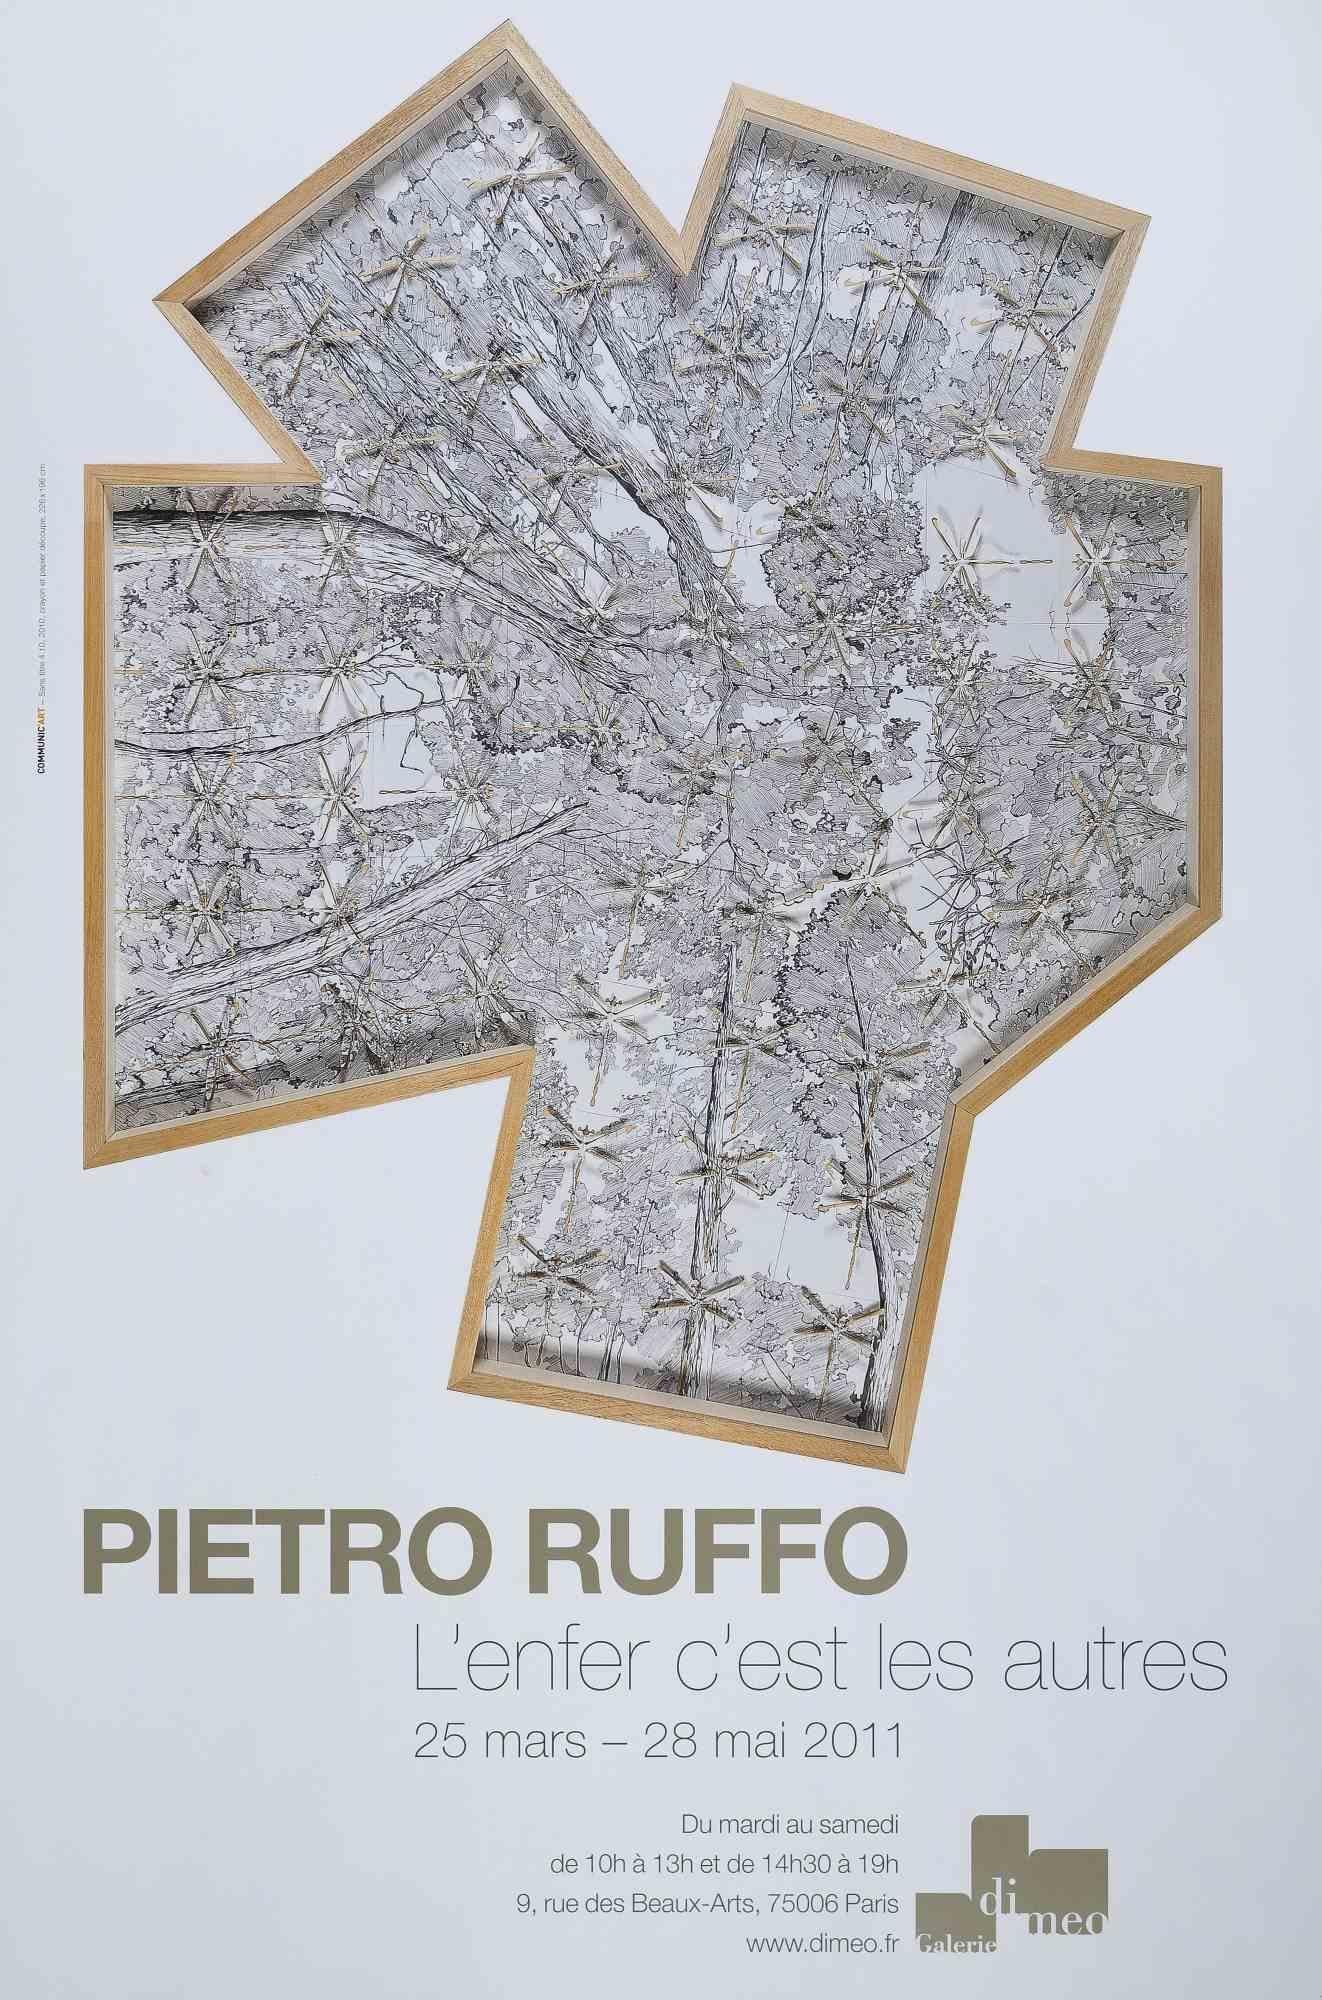 Pietro Ruffo - Exhibition Poster est une impression offset réalisée pour l'exposition de Pietro Ruffo à la Galerie Di Meo en 2011.

Bonnes conditions.